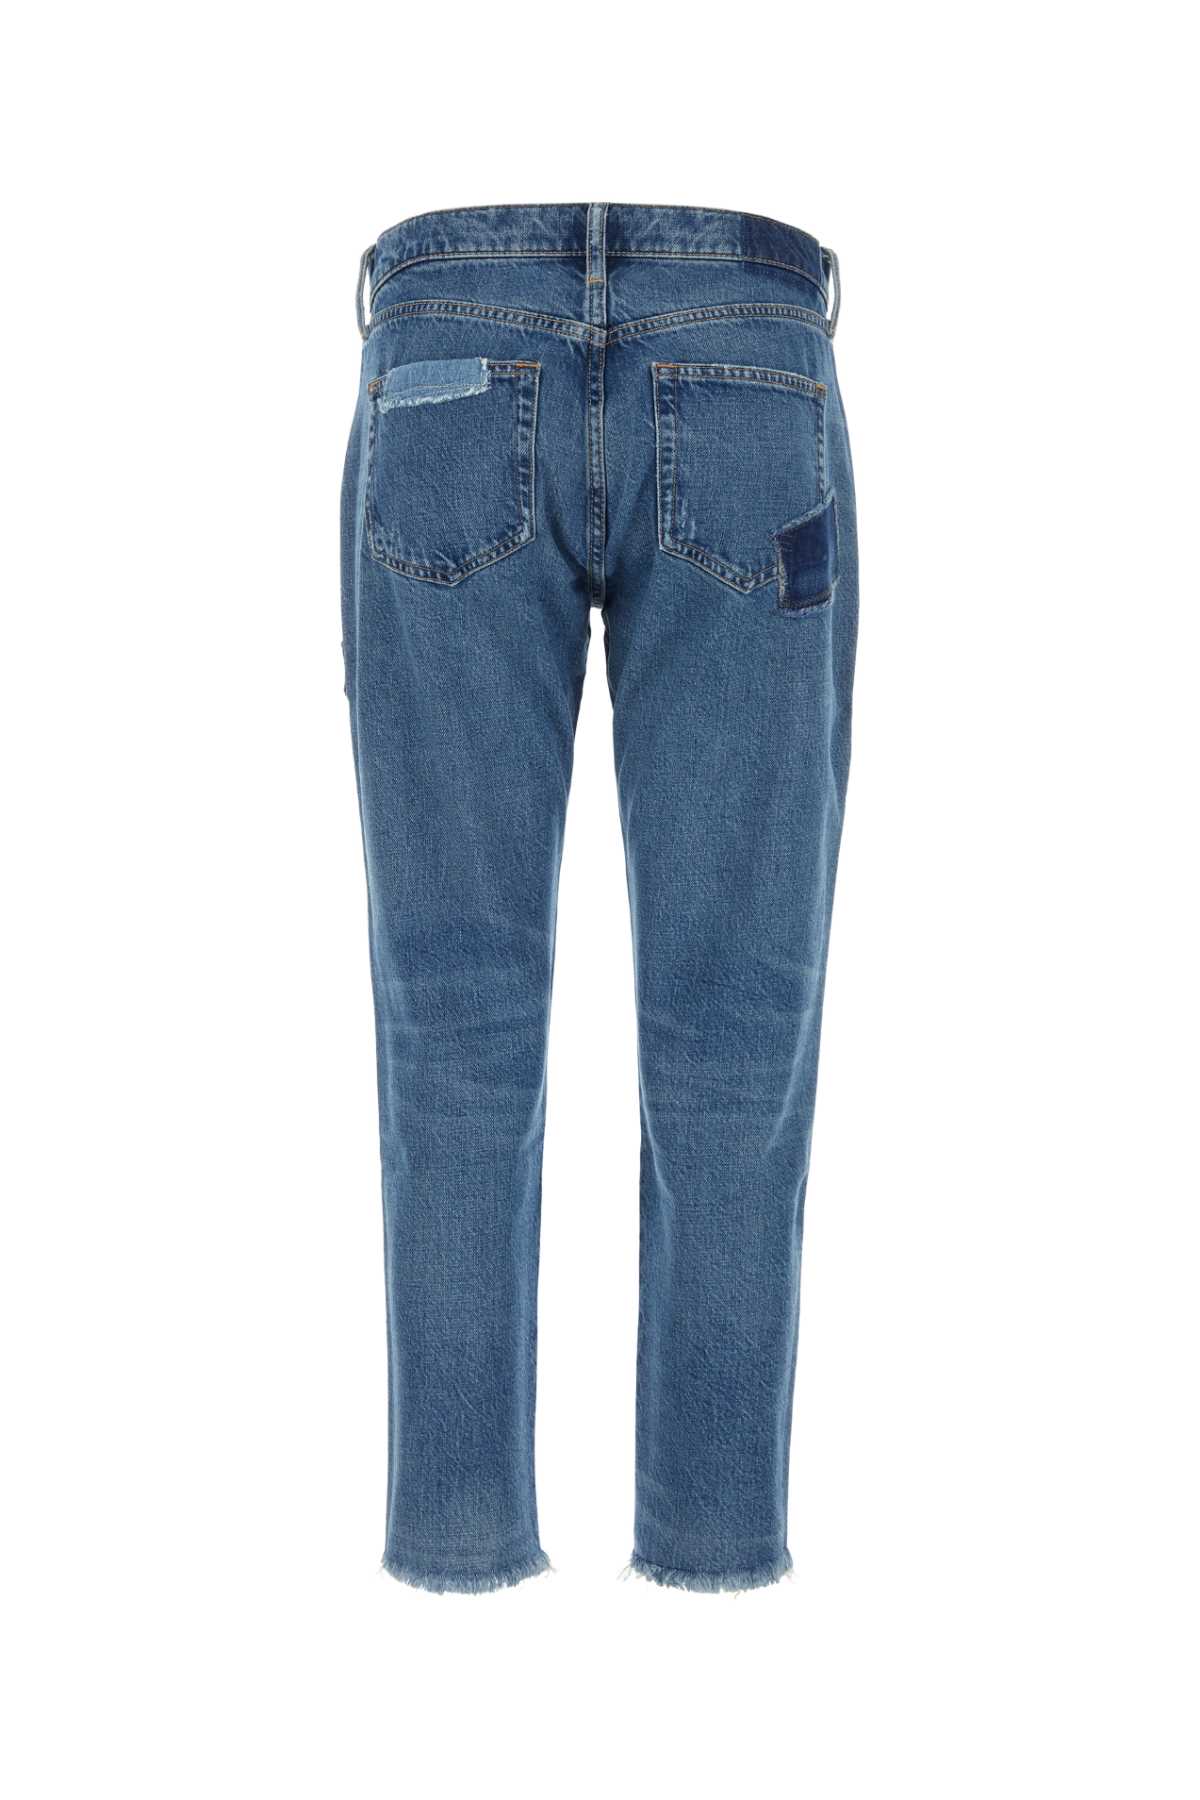 Polo Ralph Lauren Denim Jeans In 001